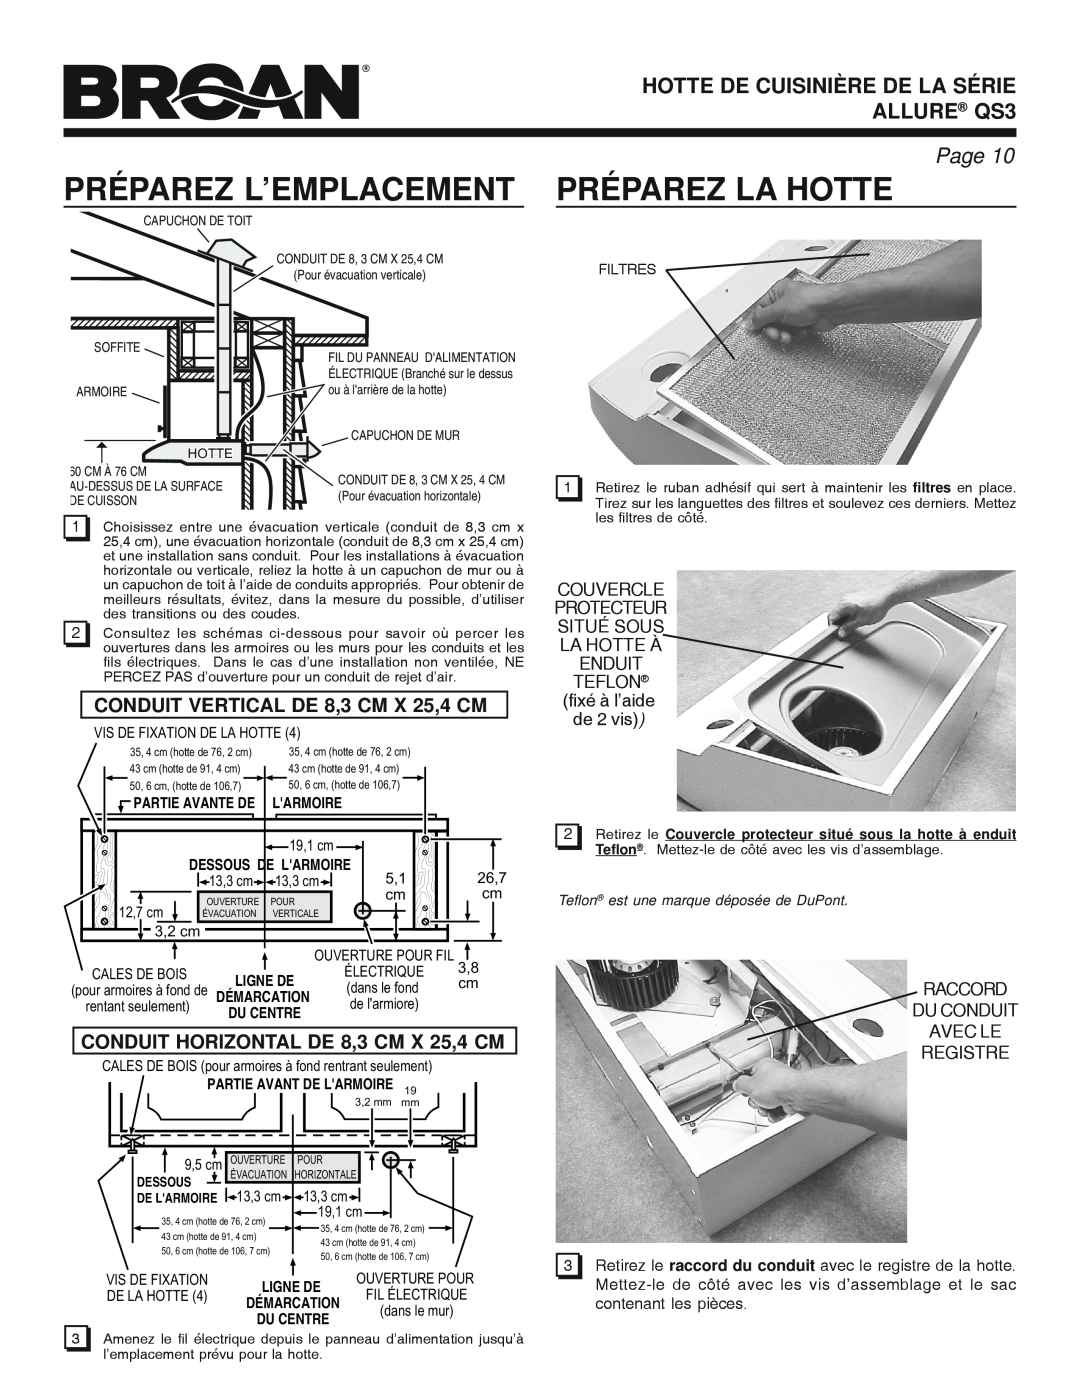 Broan QS3 SERIES manual Préparez L’Emplacement, Préparez La Hotte, HOTTE DE CUISINIÈRE DE LA SÉRIE ALLURE QS3, Page 